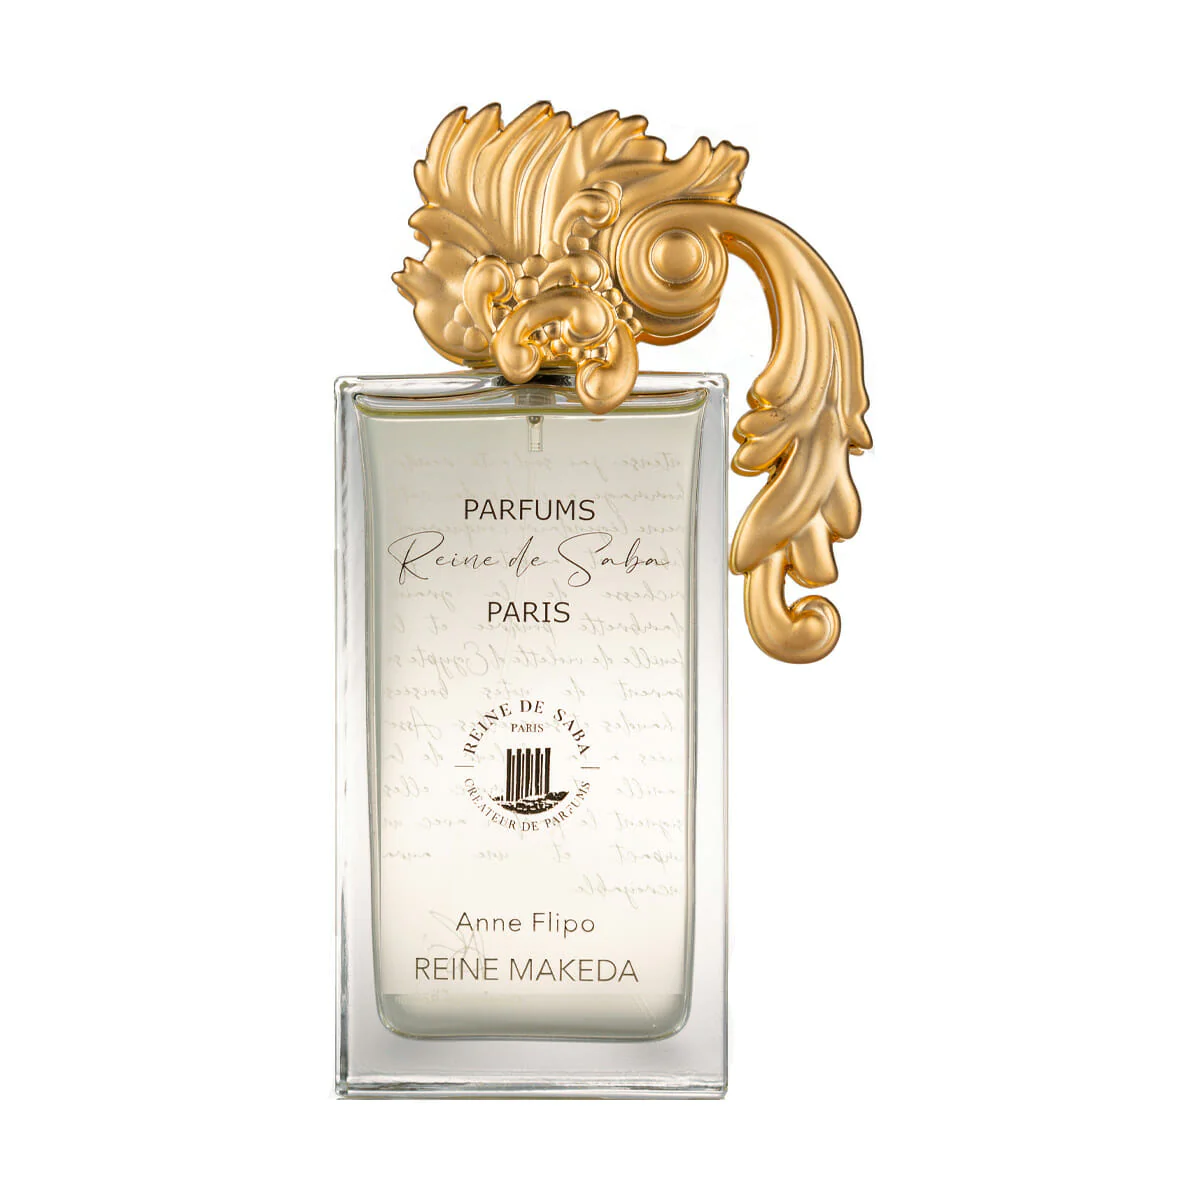 Reine Makeda Reine de Saba parfum 100 ml